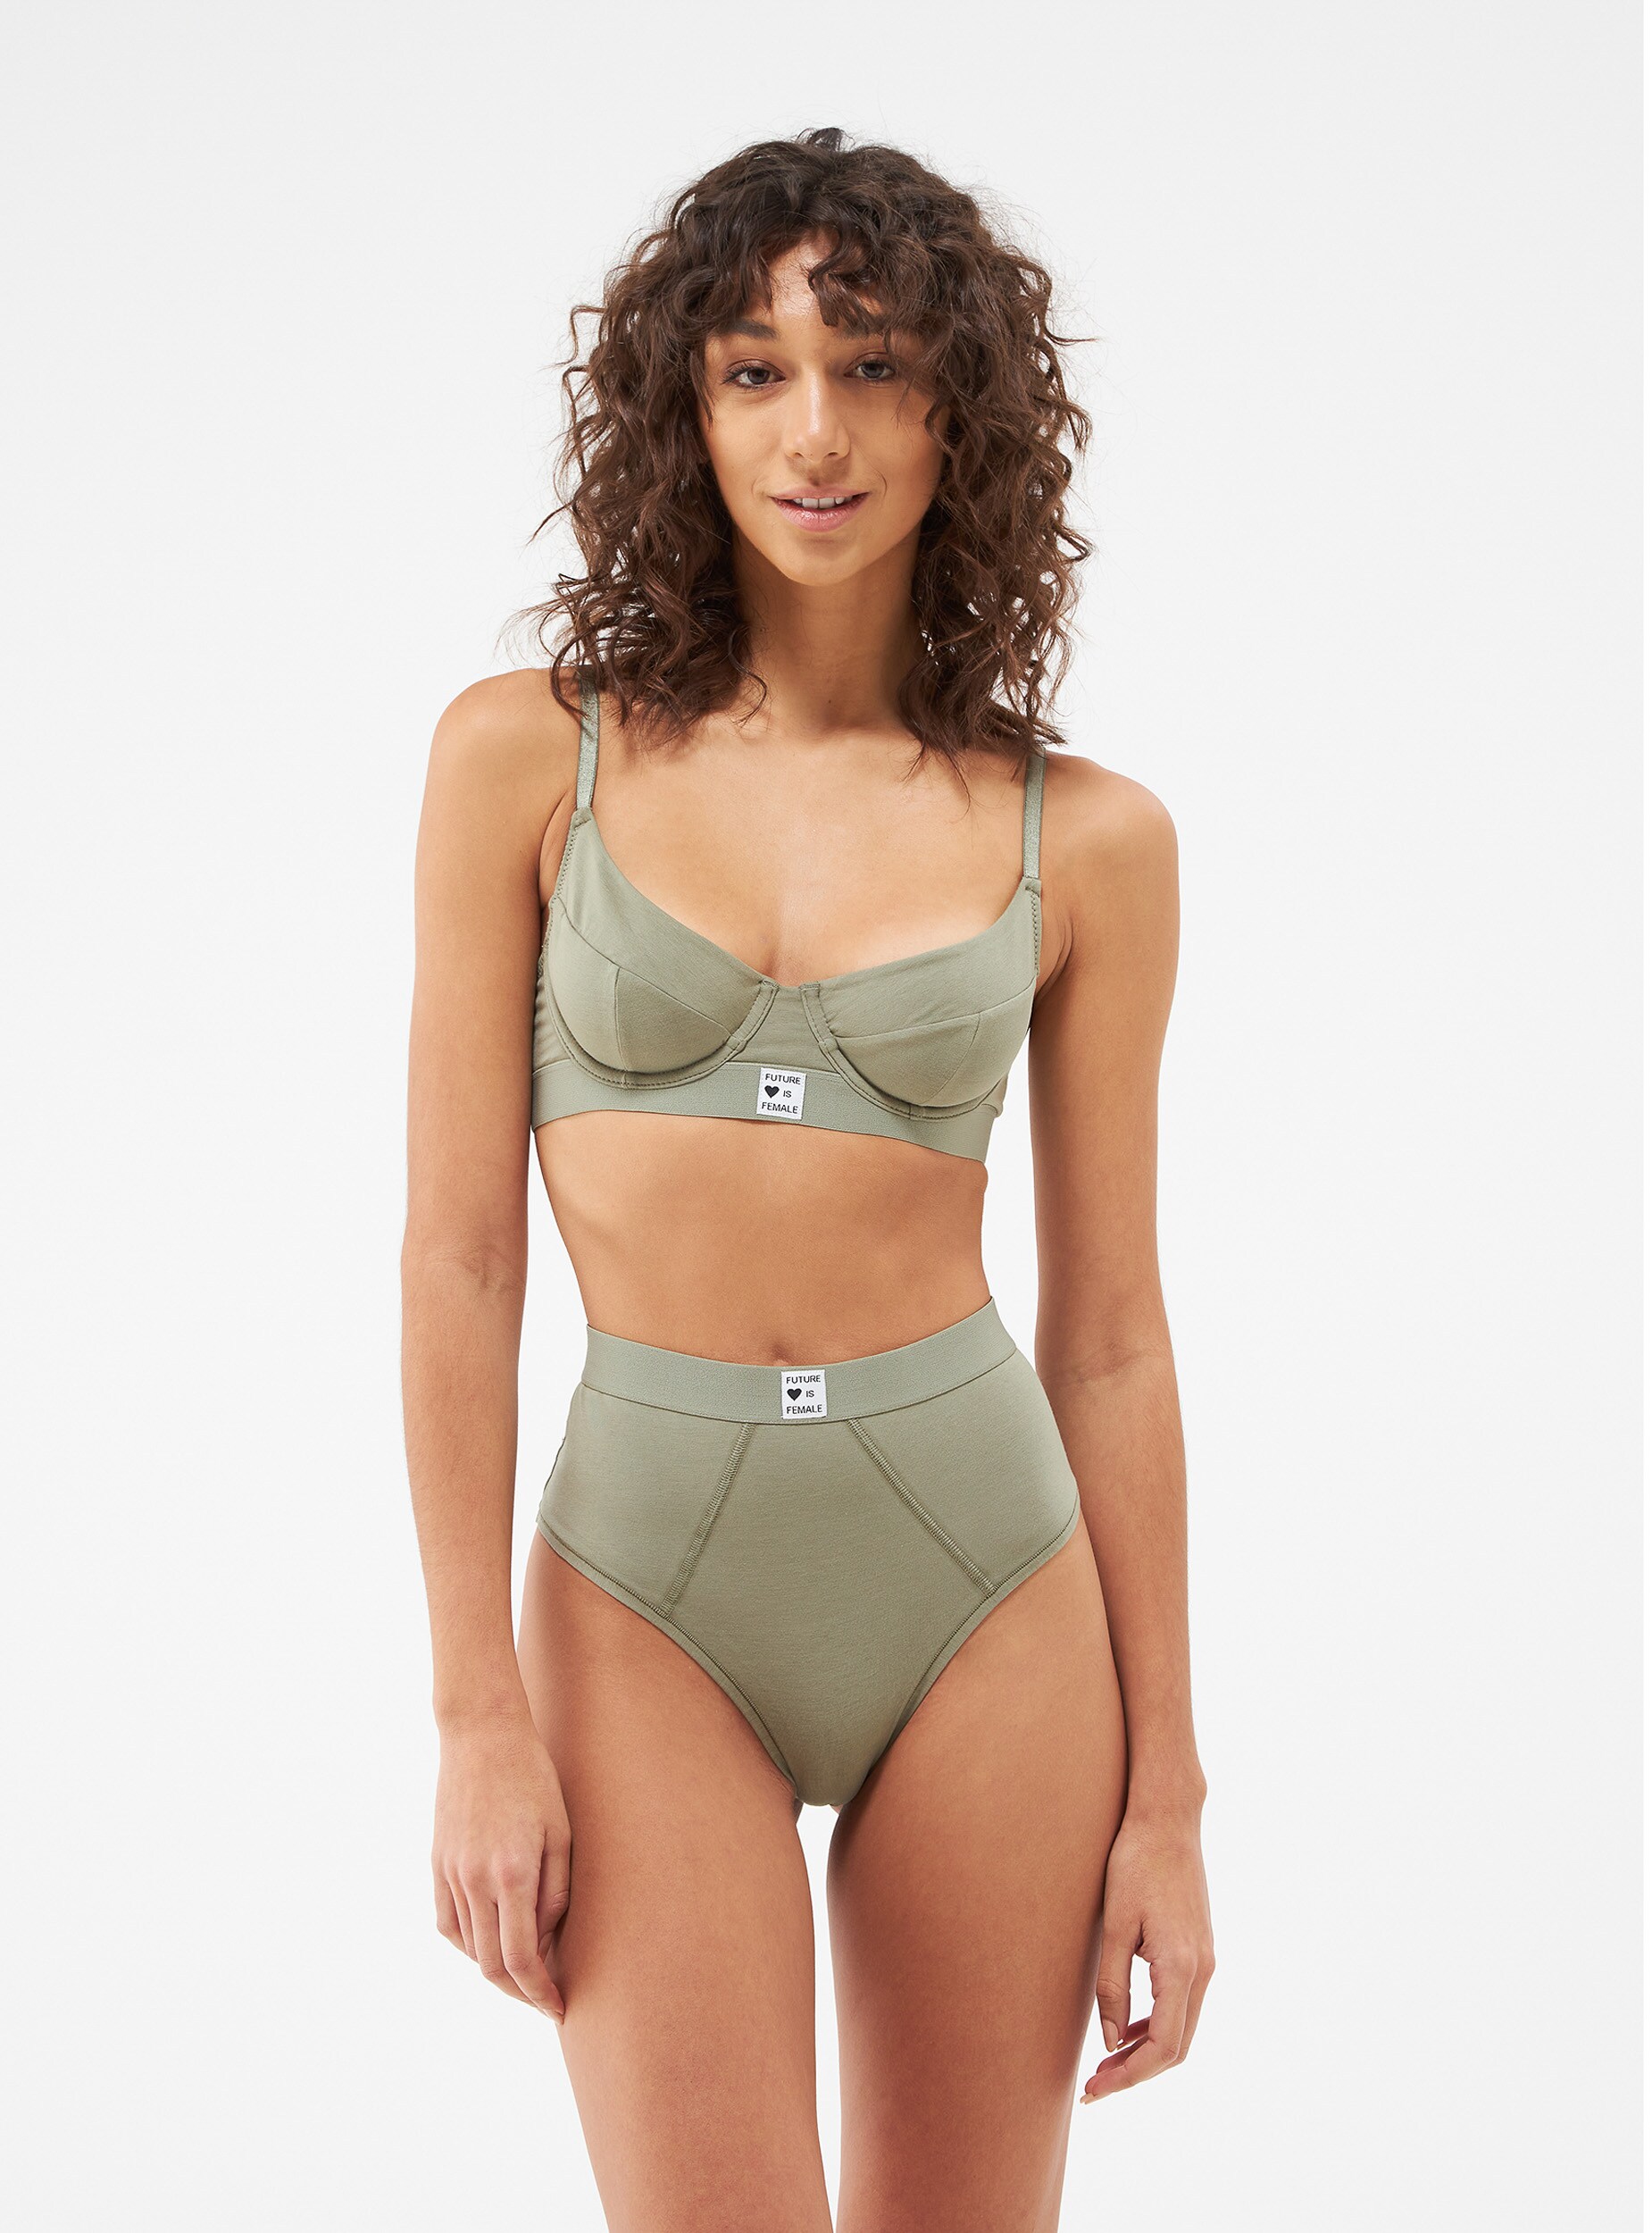 Luisaviaroma Donna Abbigliamento Intimo Mutande Slip brasilana Slip Vita Alta In Jersey Di Modal Con Logo 